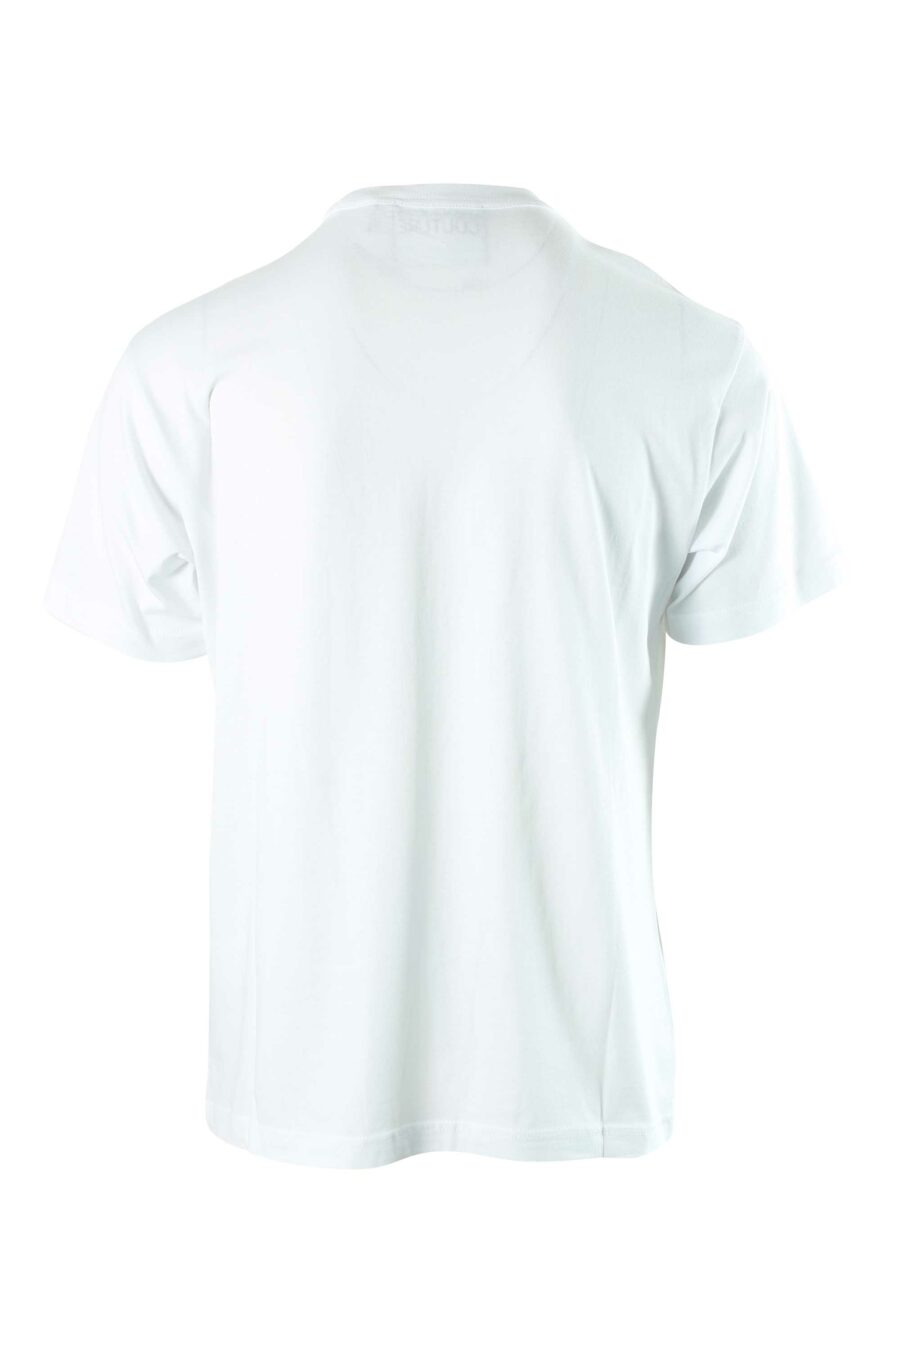 Camiseta blanca con maxilogo centrado - 8052019318685 2